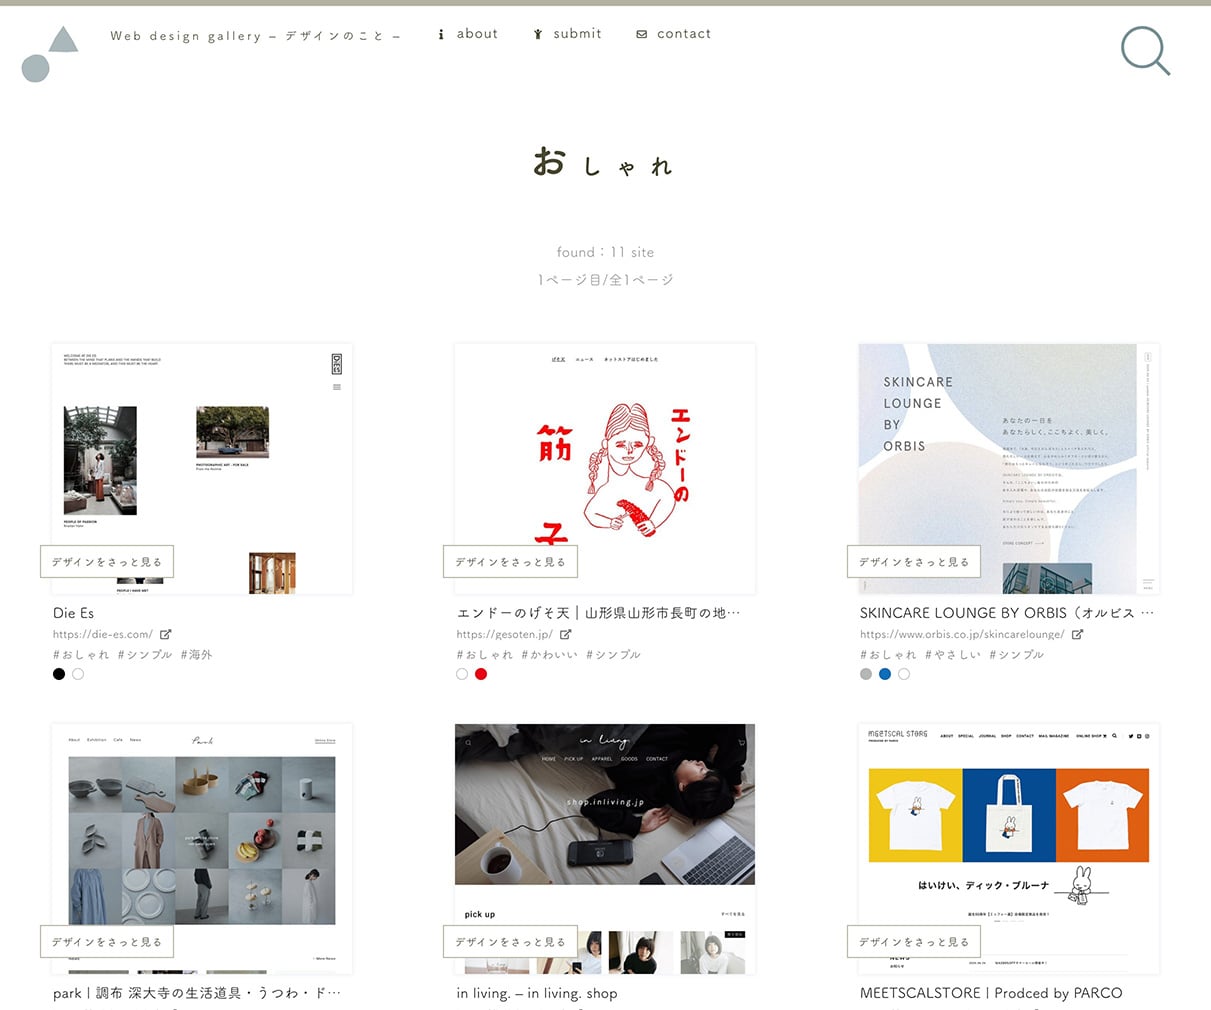 デザインのこと - Web design gallery